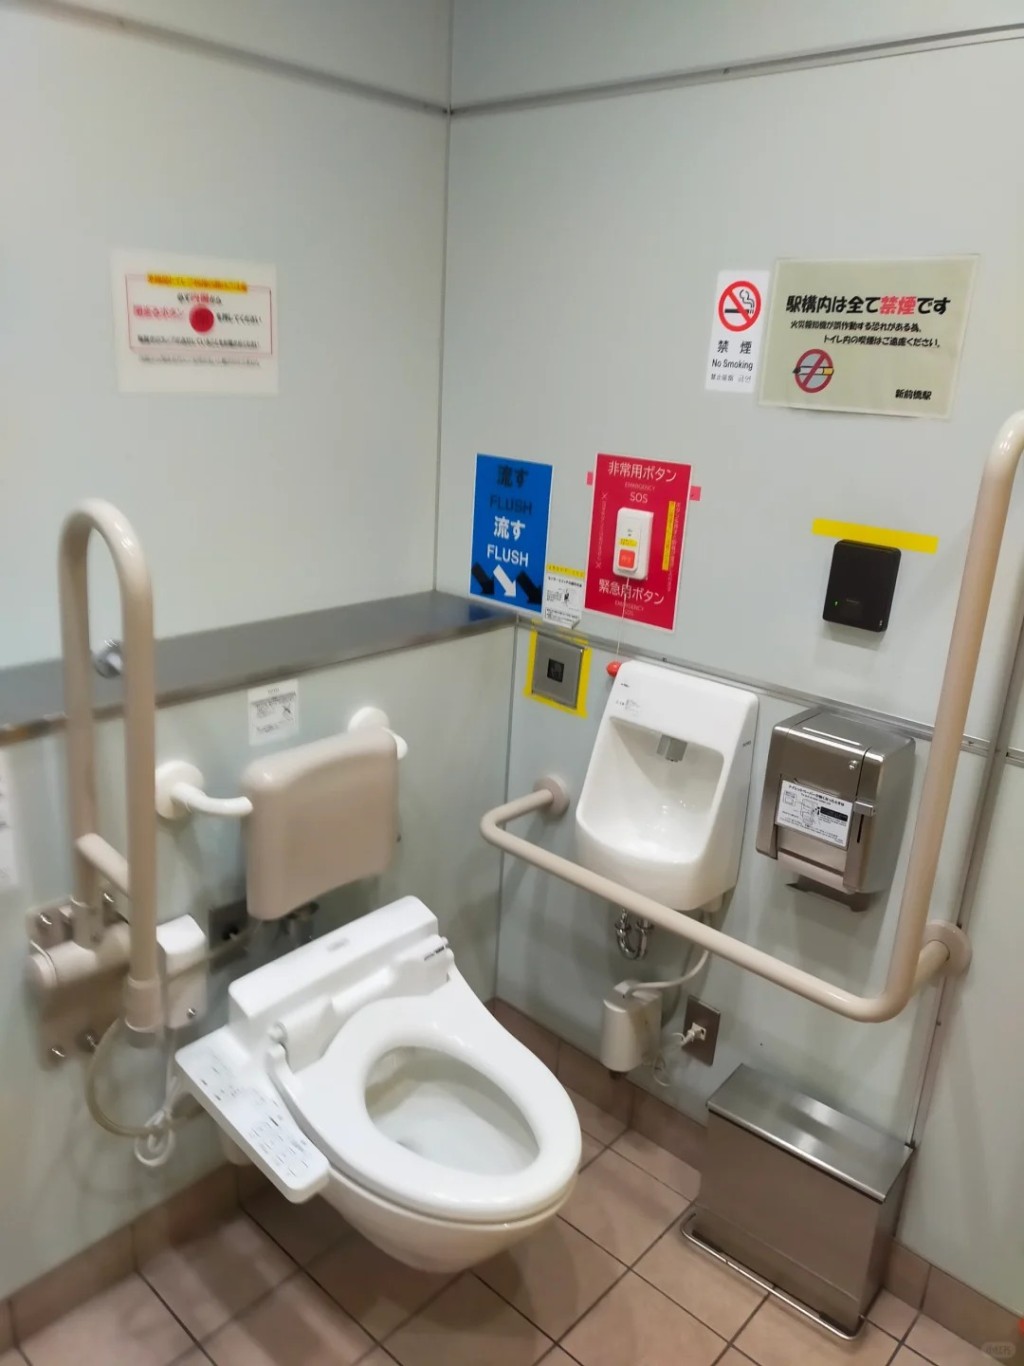 日本公共场所内的无障碍厕所。